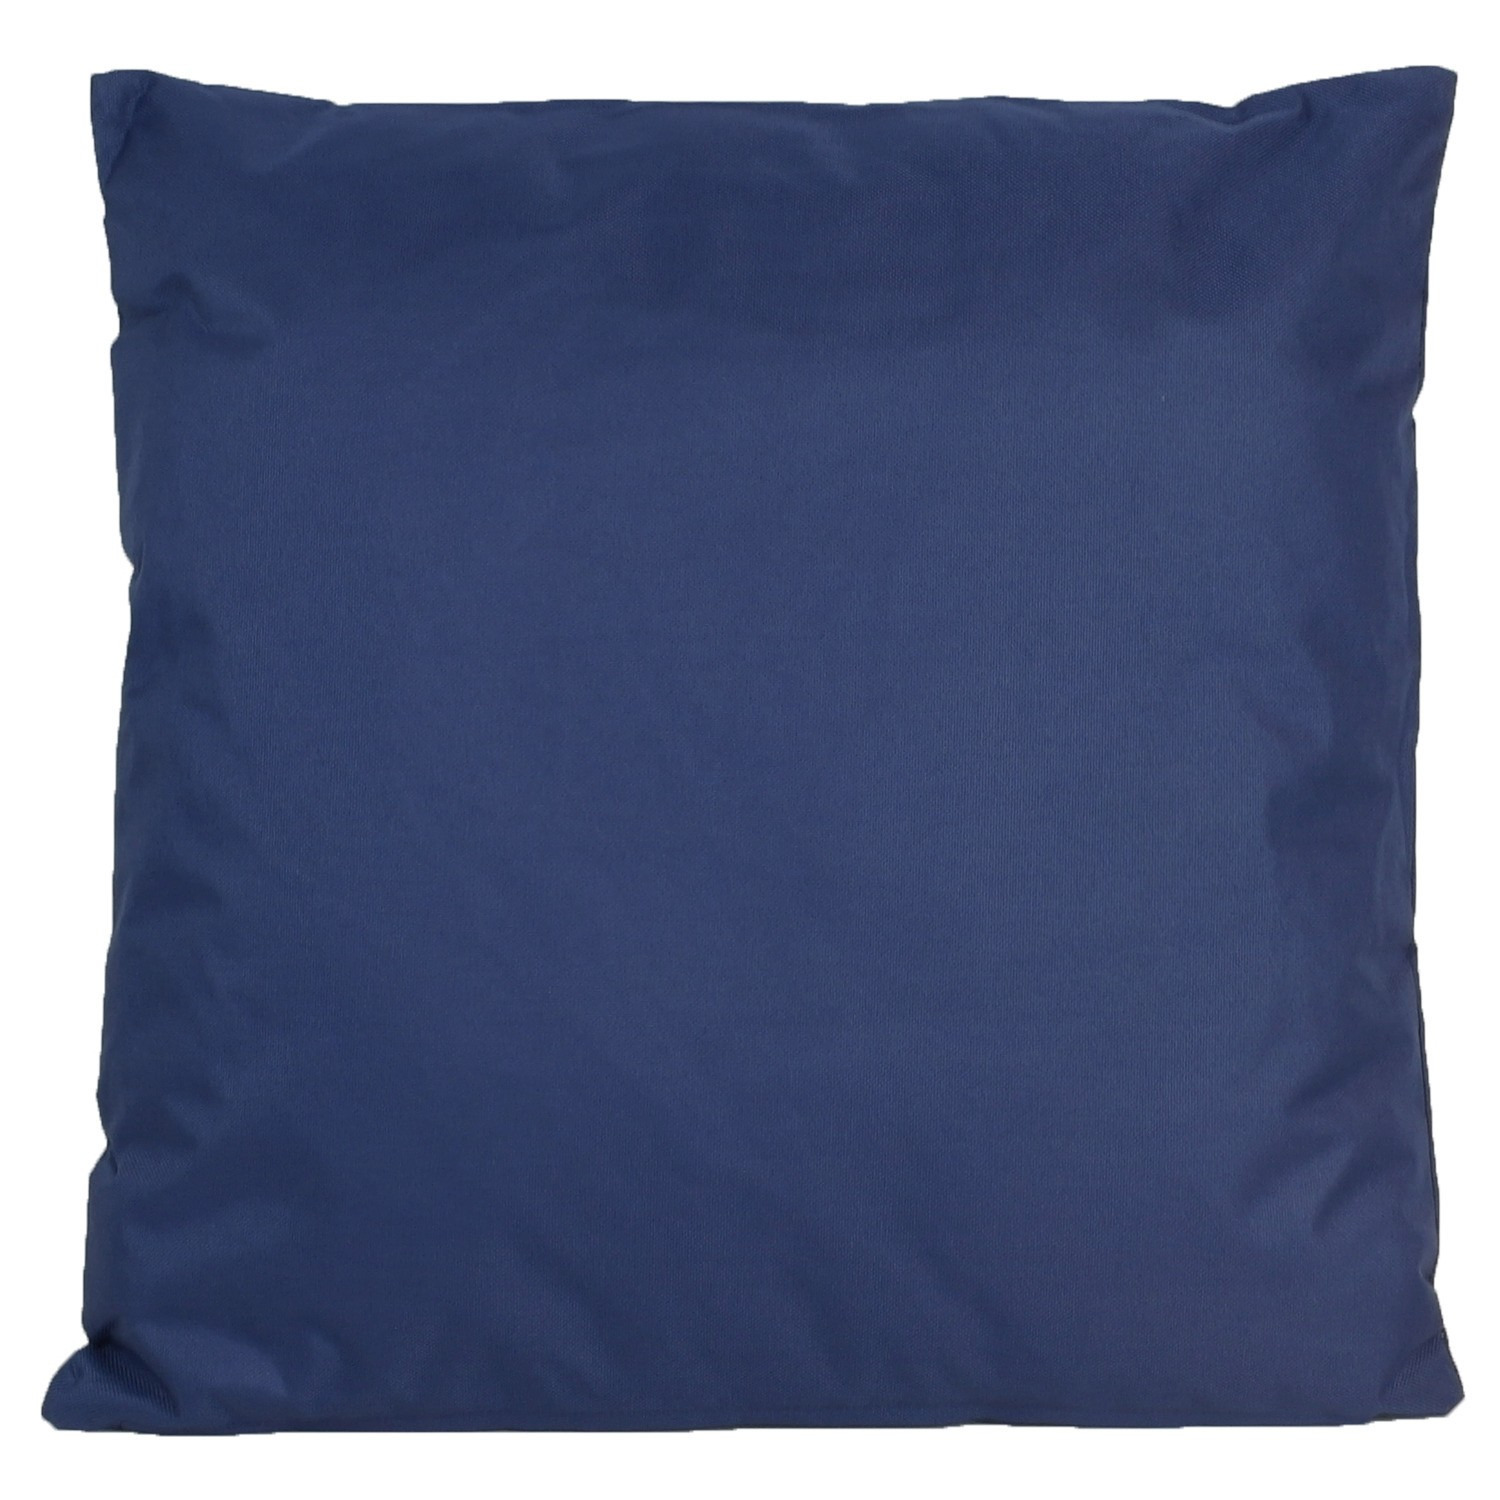 1x Bank/Sier kussens voor binnen en buiten in de kleur donkerblauw 45 x 45 cm